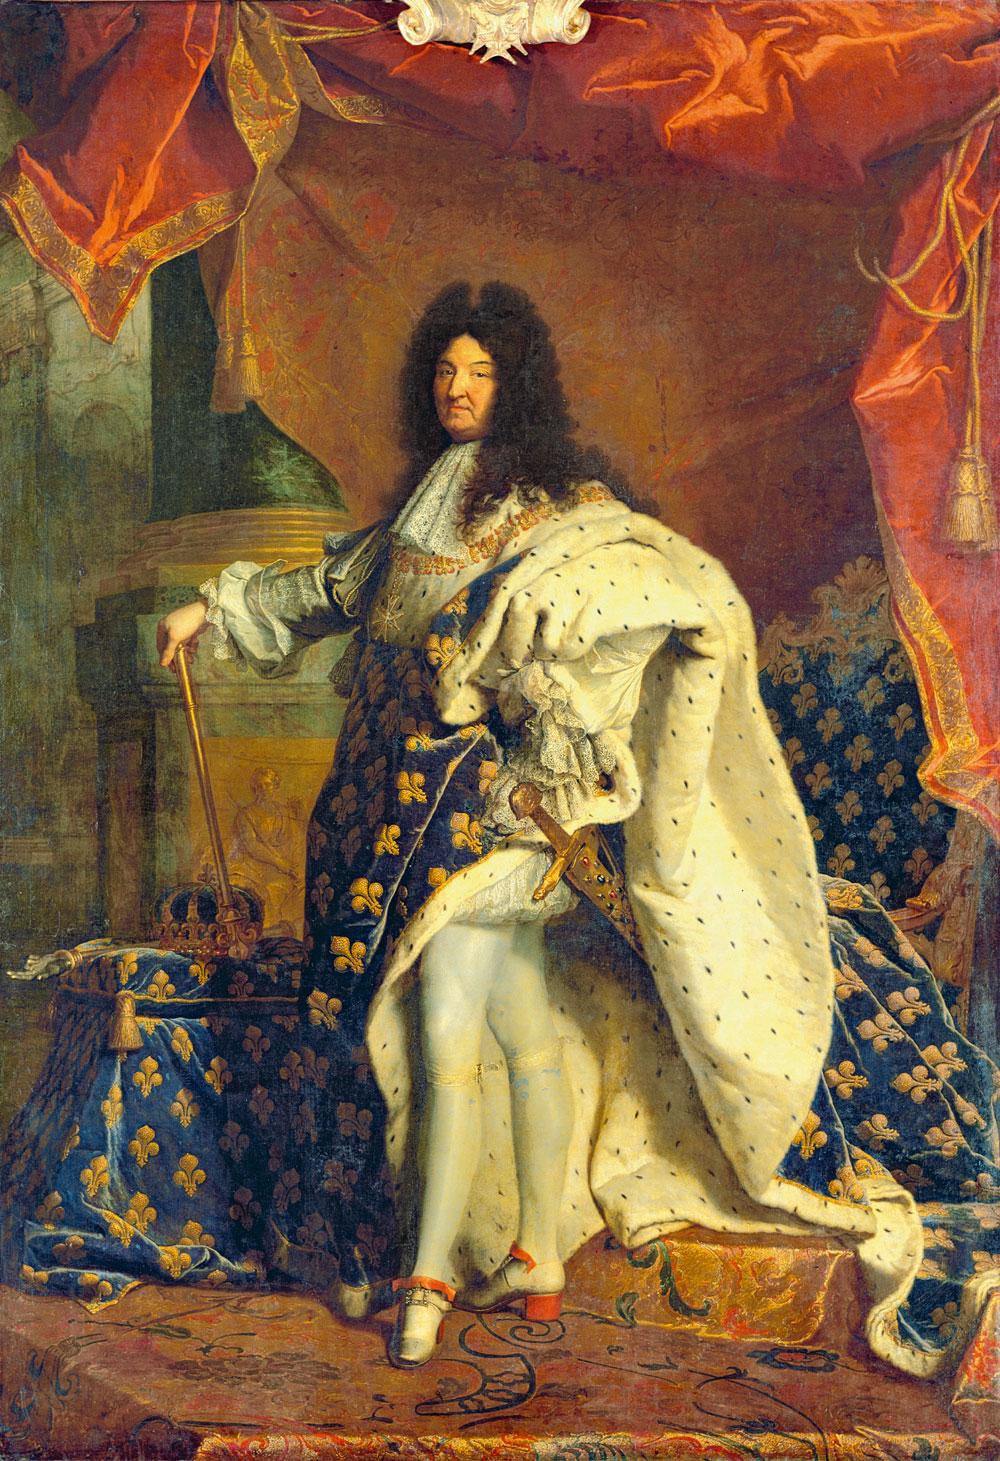 Le sens d'un geste n'est pas figé dans le temps. Expression de la virilité aux xviie et  xviiie siècles, l'attitude de Louis XIV passerait pour efféminée de nos jours.